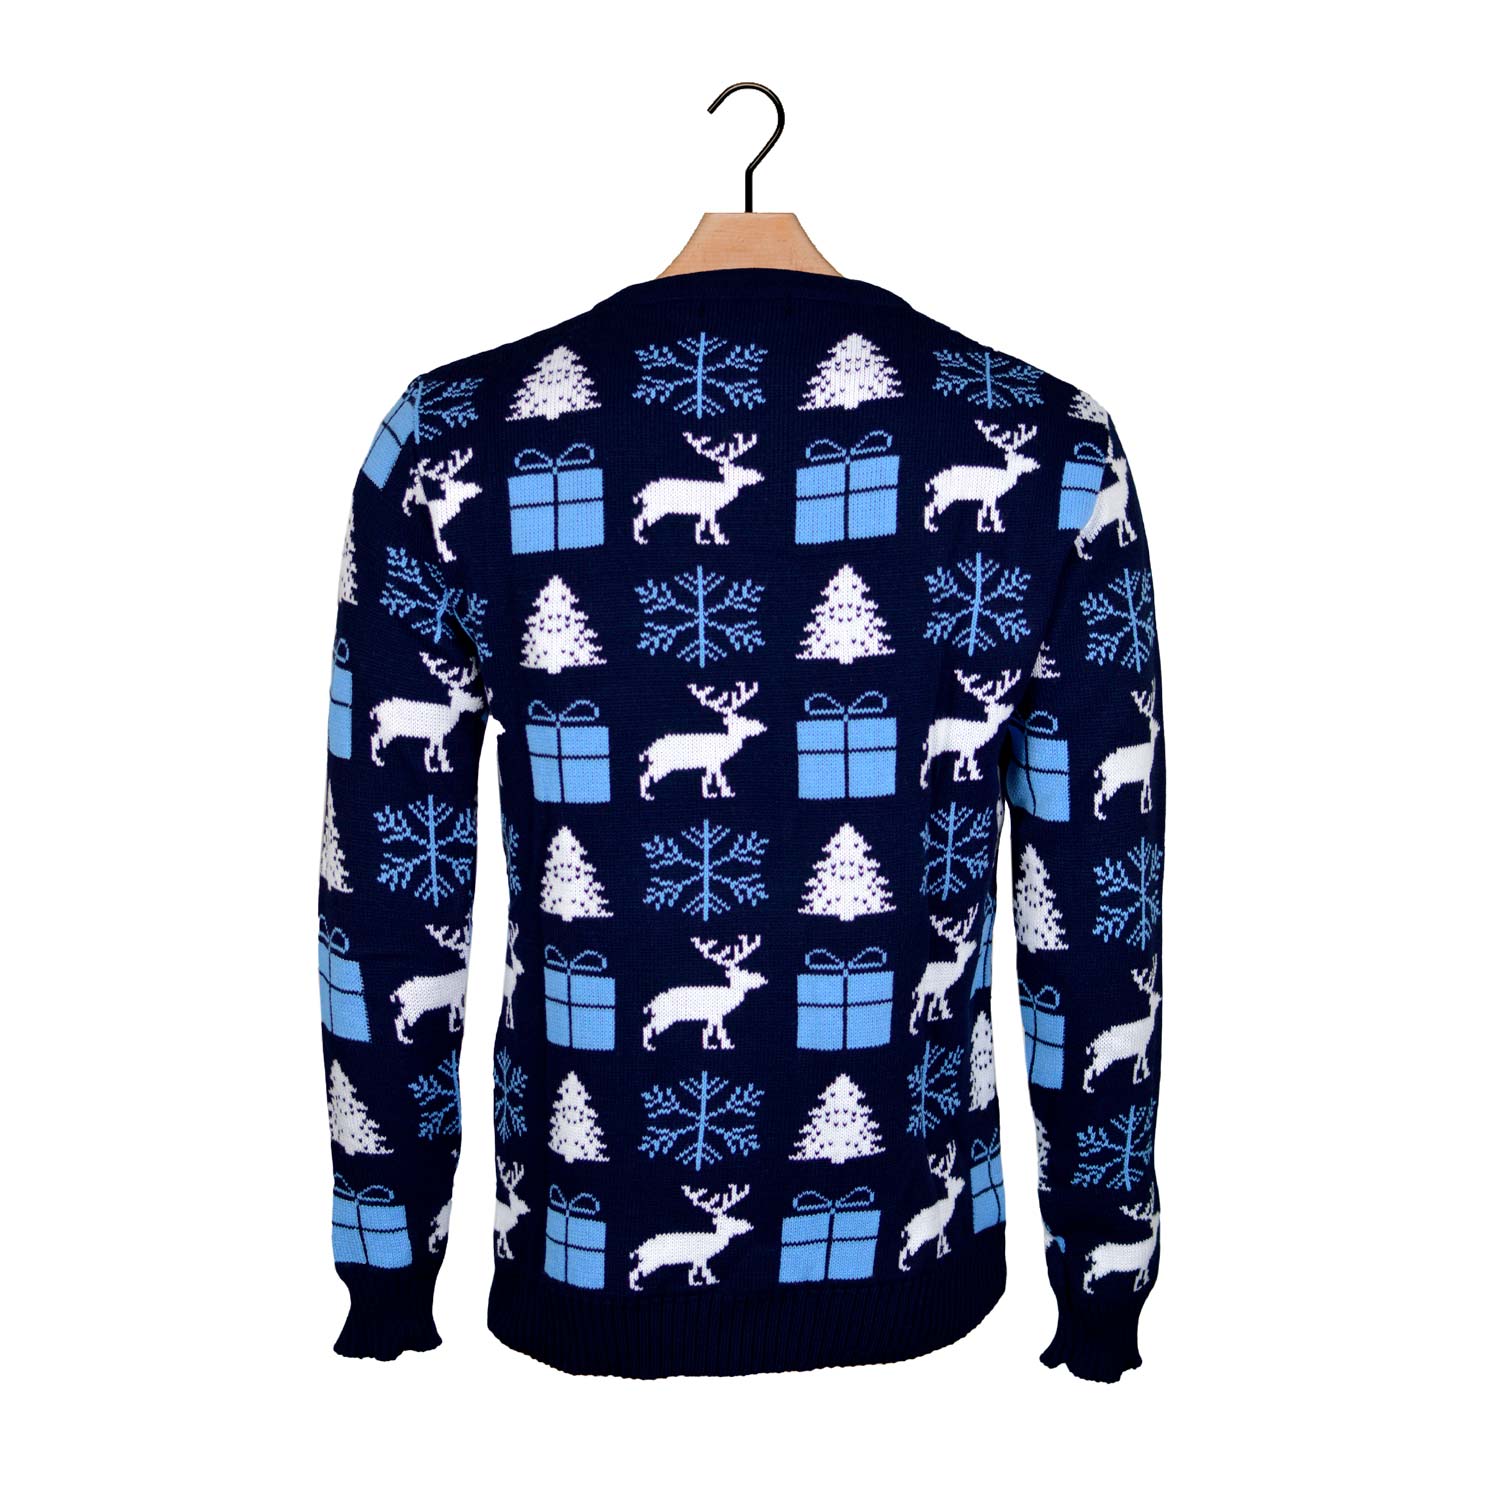 Niebieski Sweter Świąteczny z Reniferami, Prezentami i Choinkami powrotem